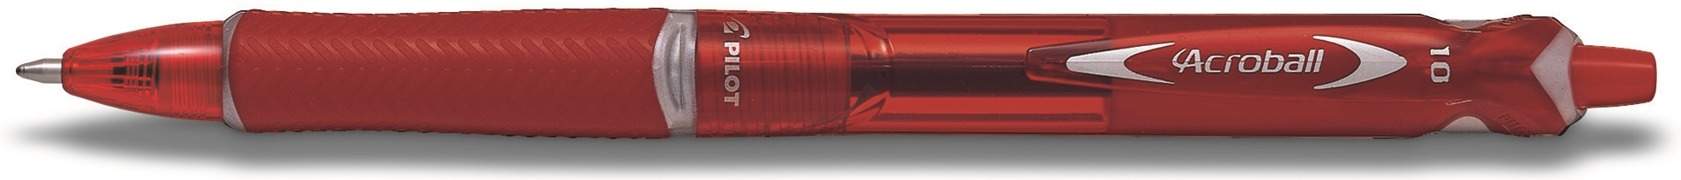 Kugelschreiber Acroball rot